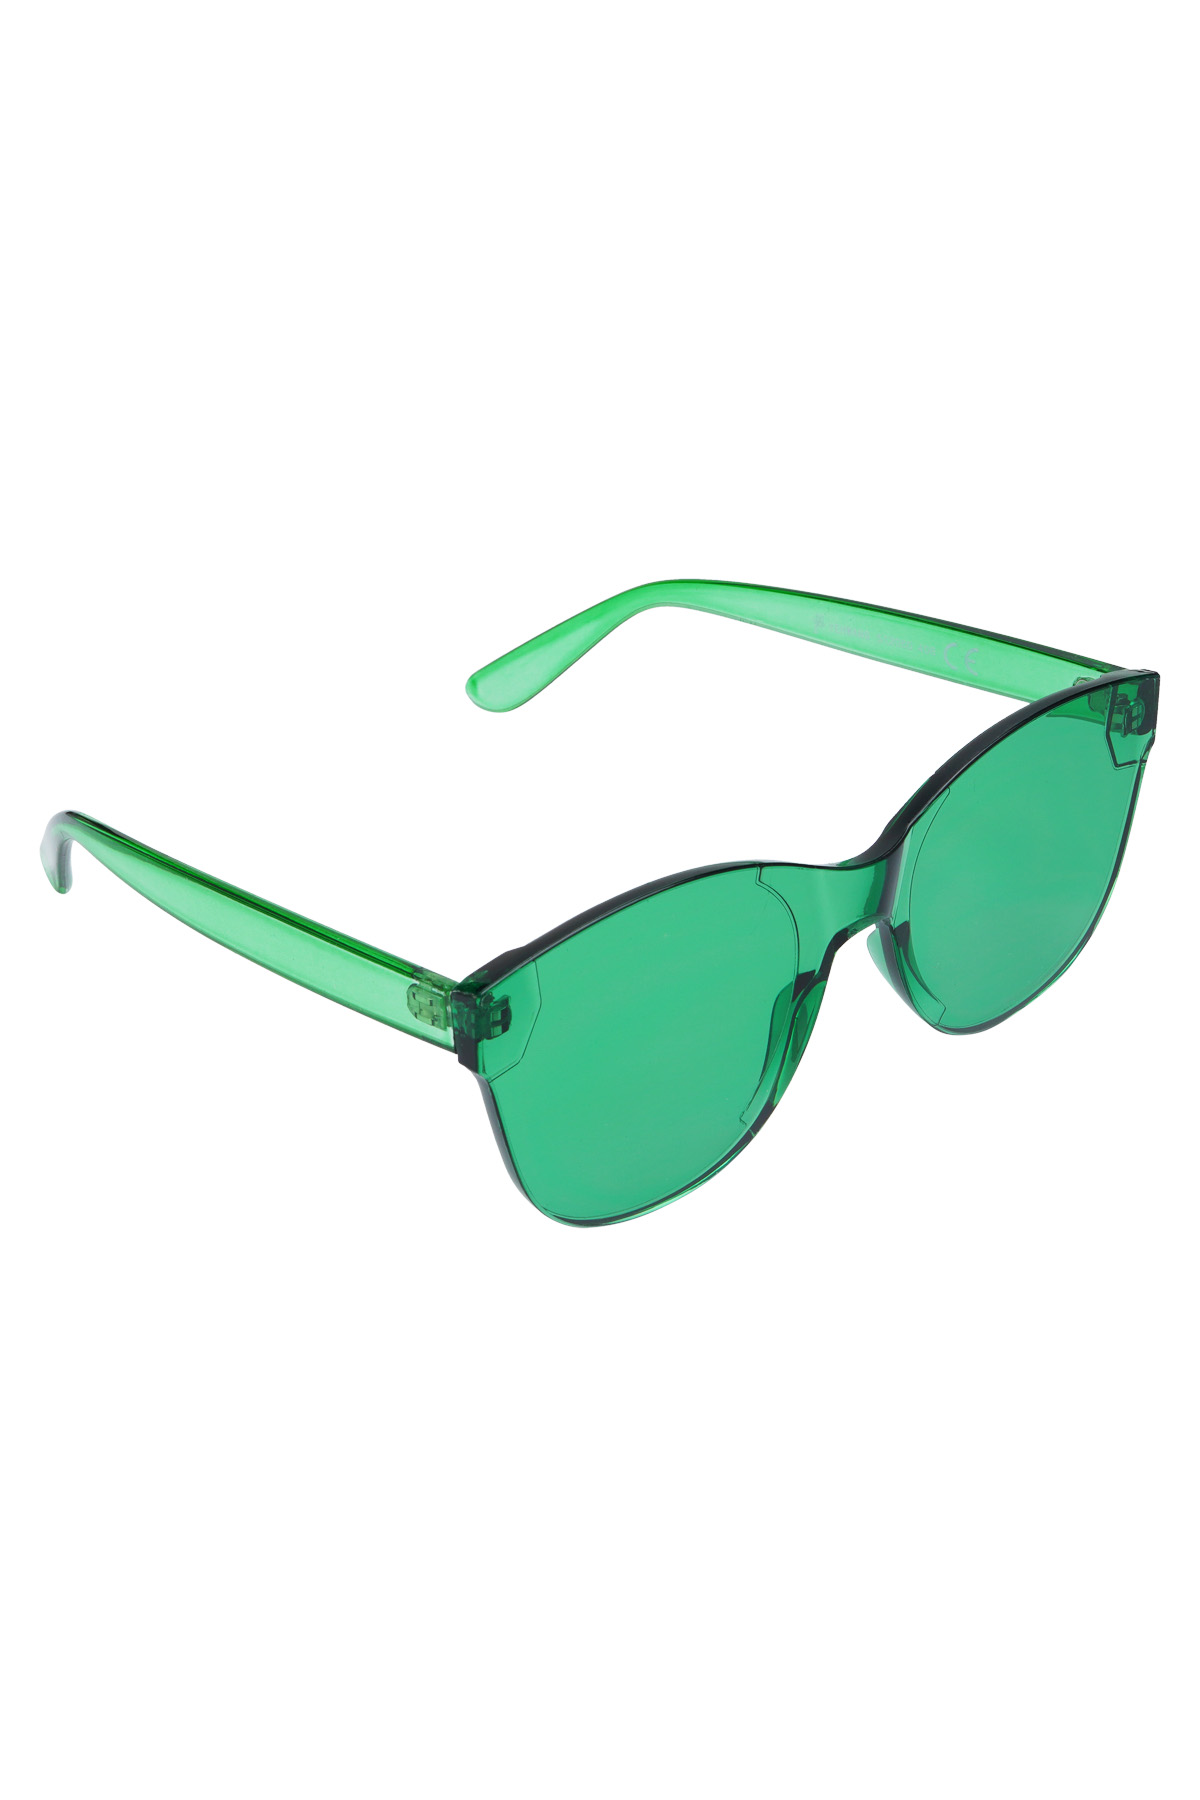 Eenkleurige trendy zonnebril - groen